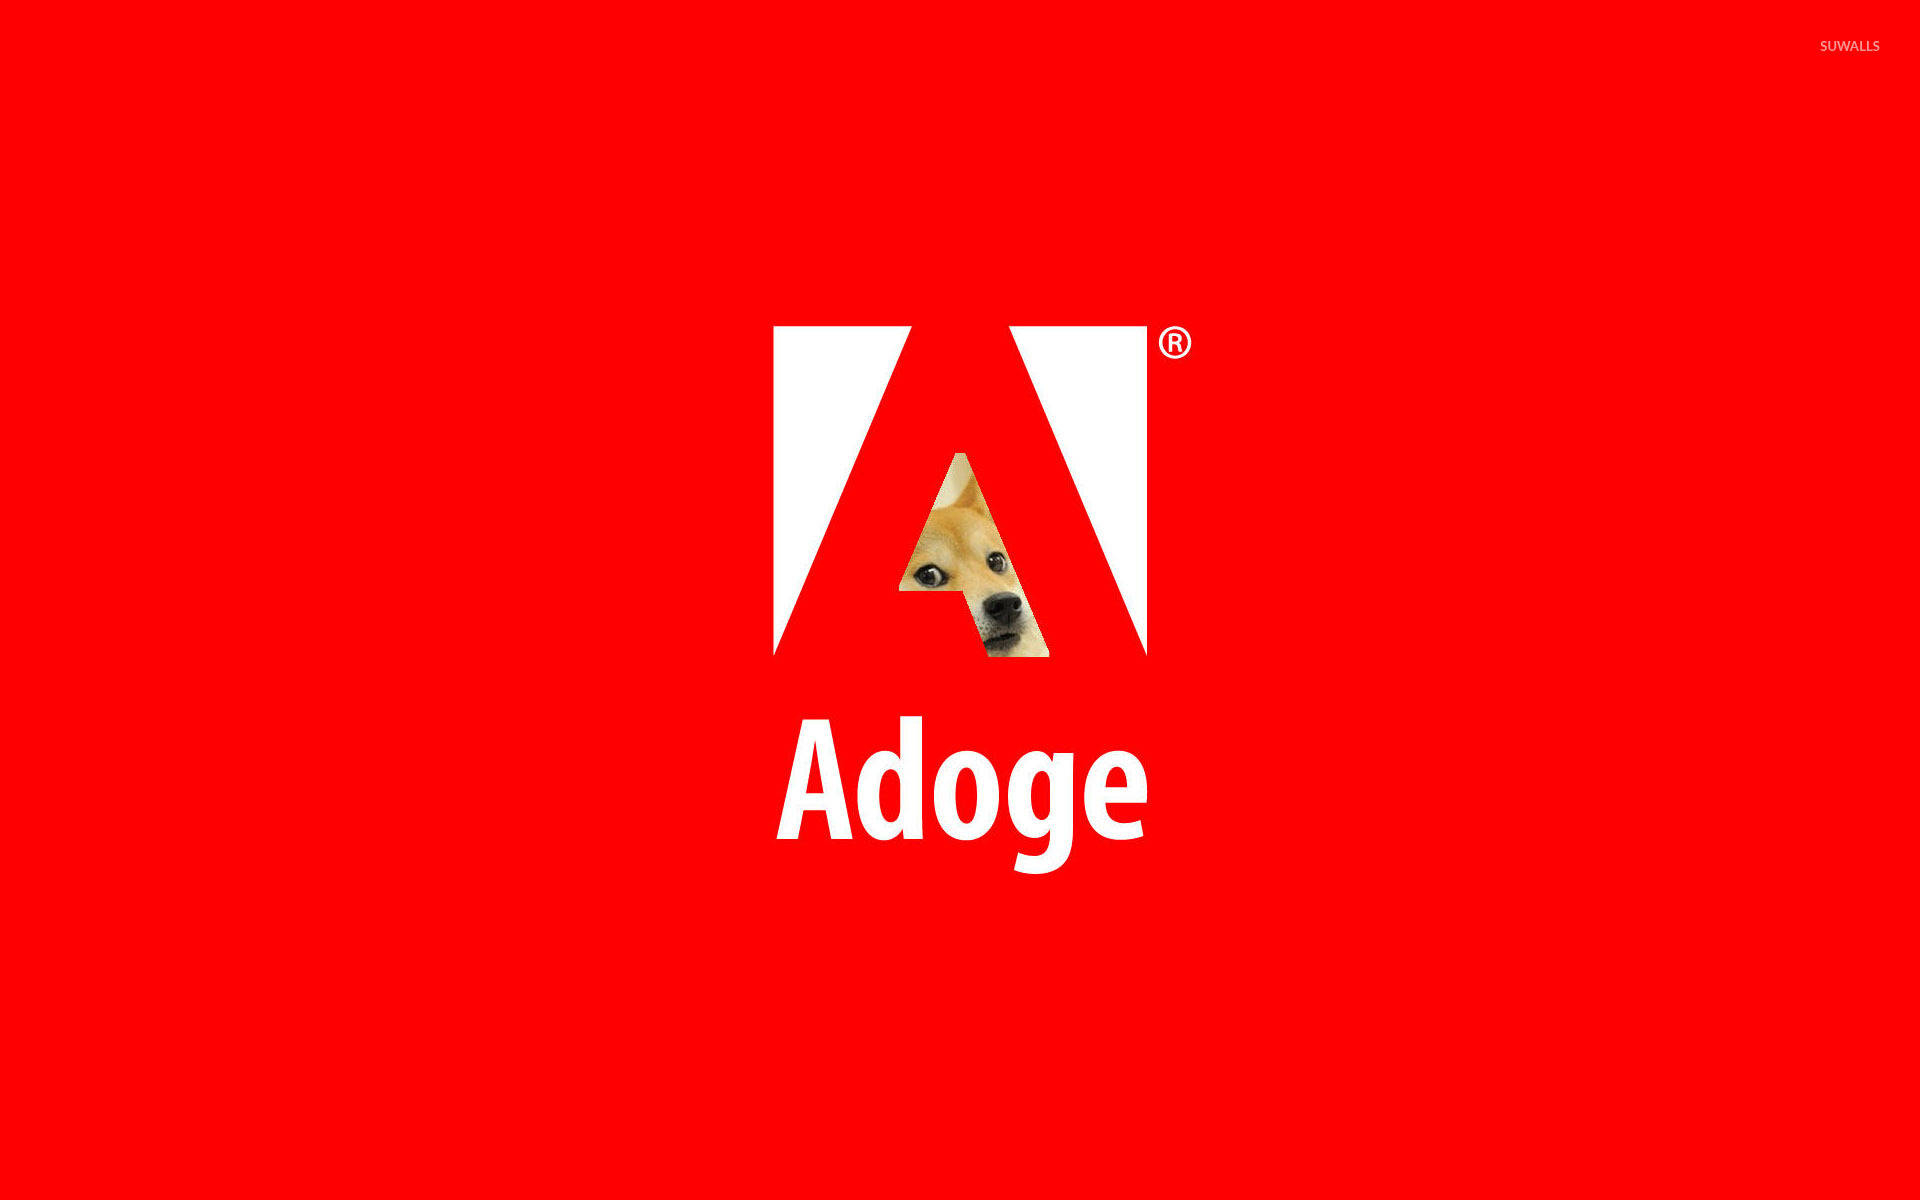 Adoge Doge Meme